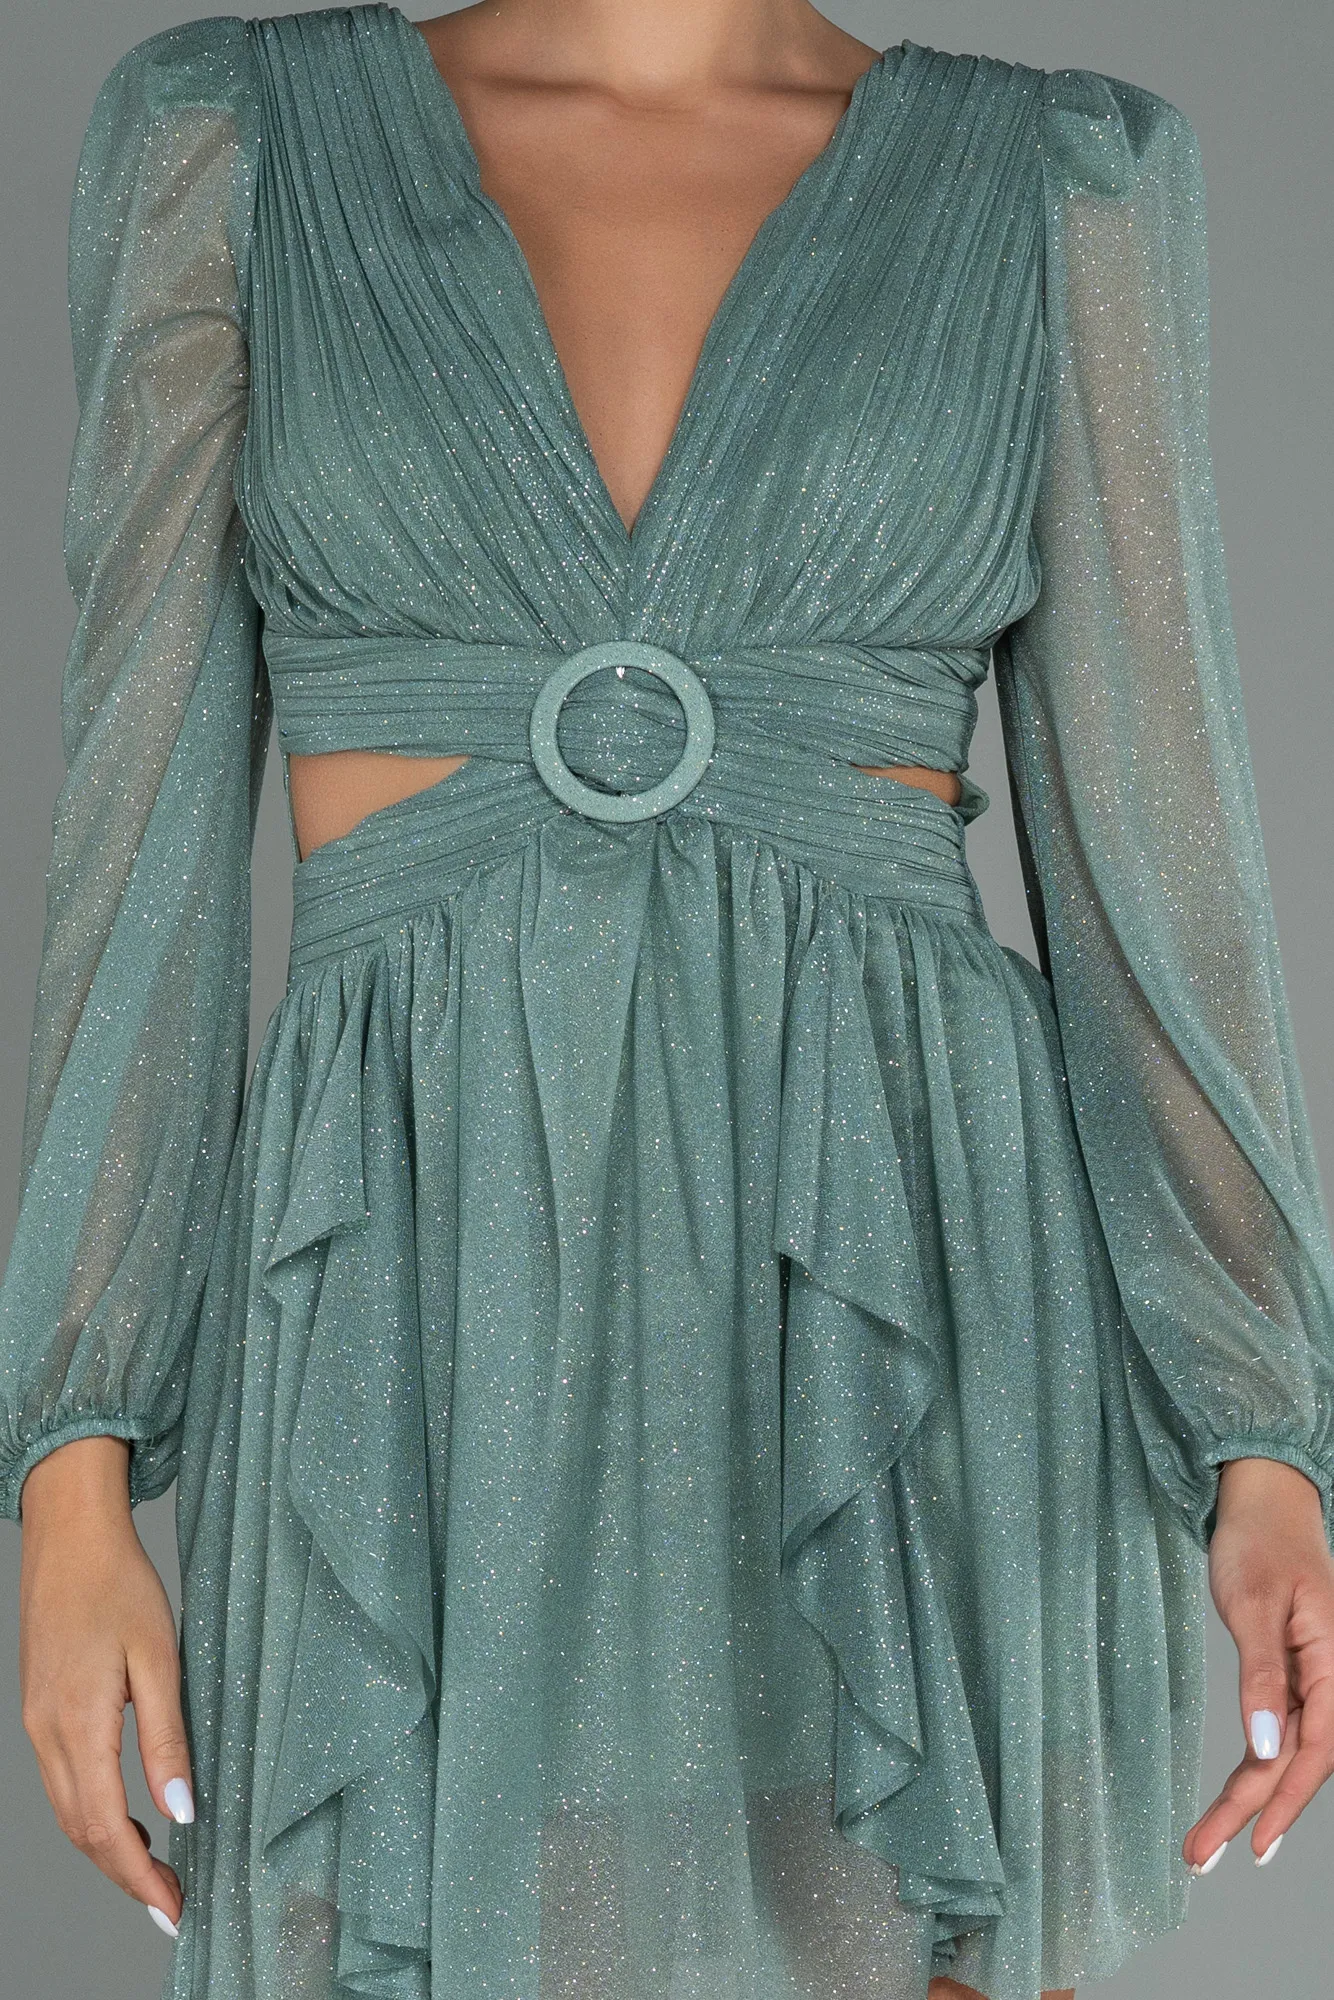 Turquoise-Short Invitation Dress ABK1743